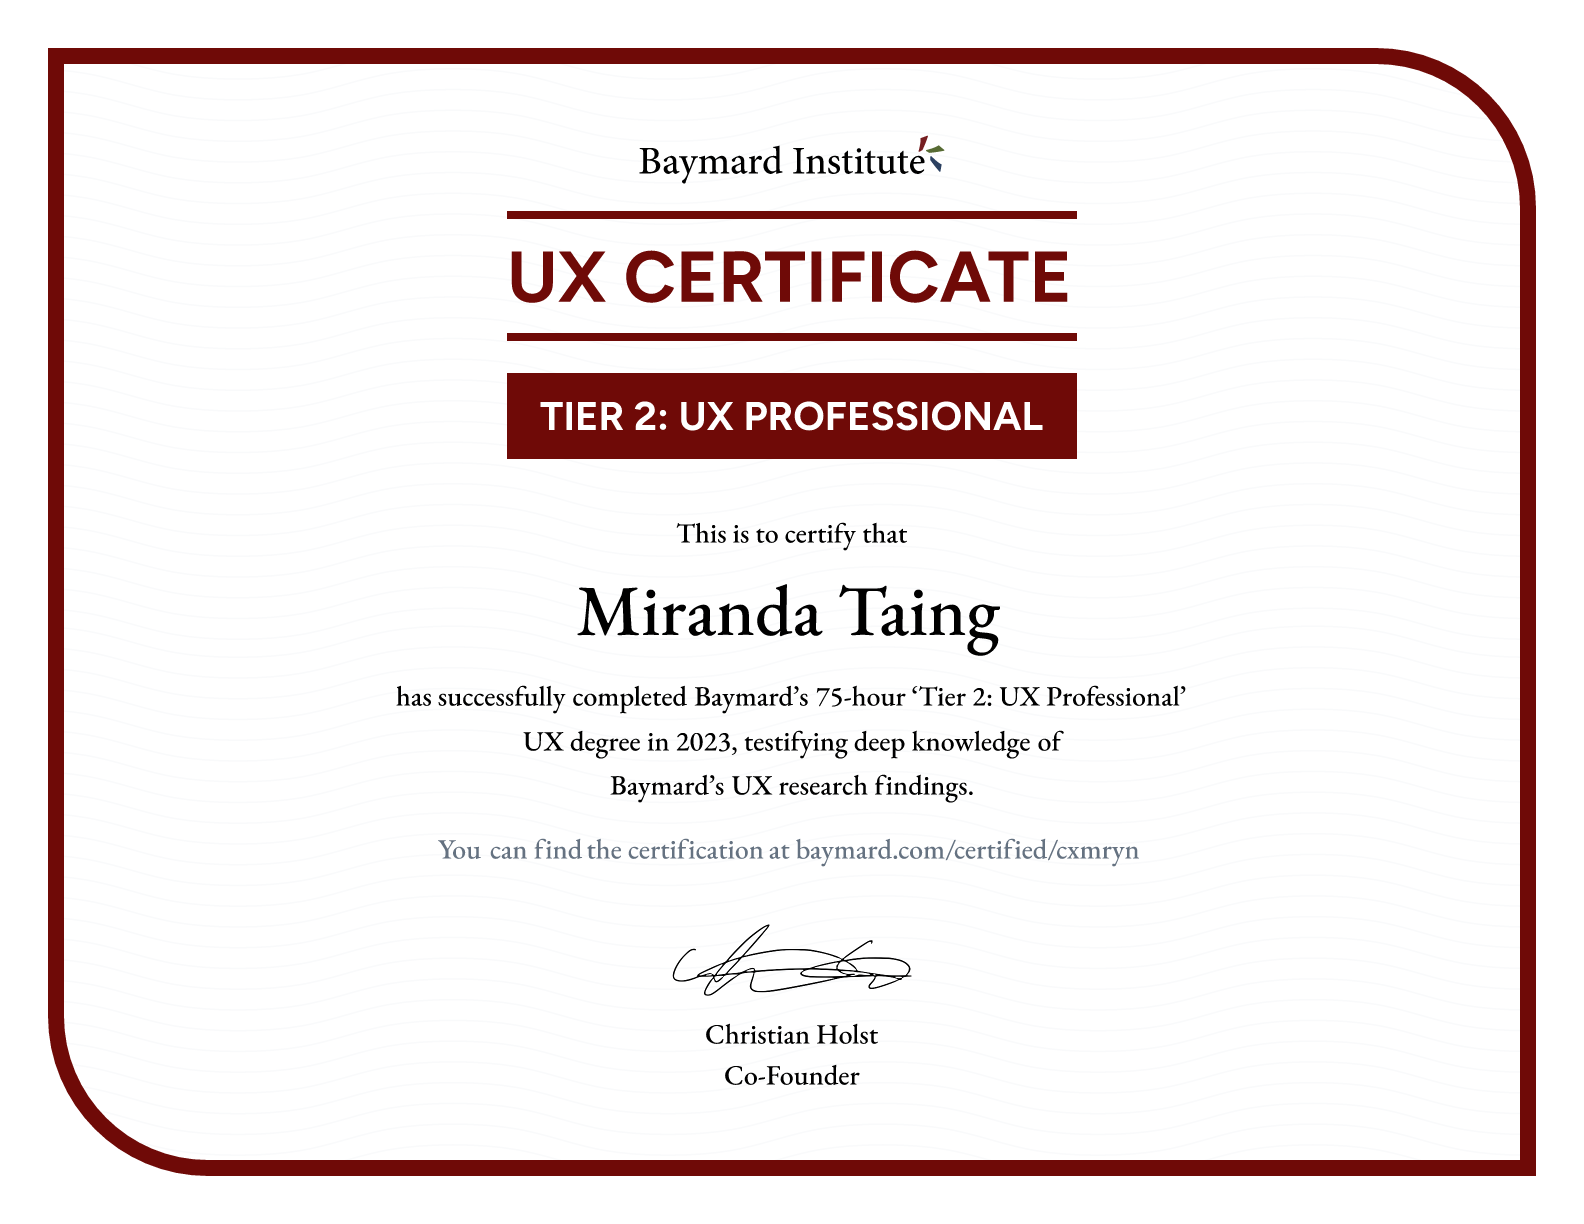 Miranda Taing’s certificate